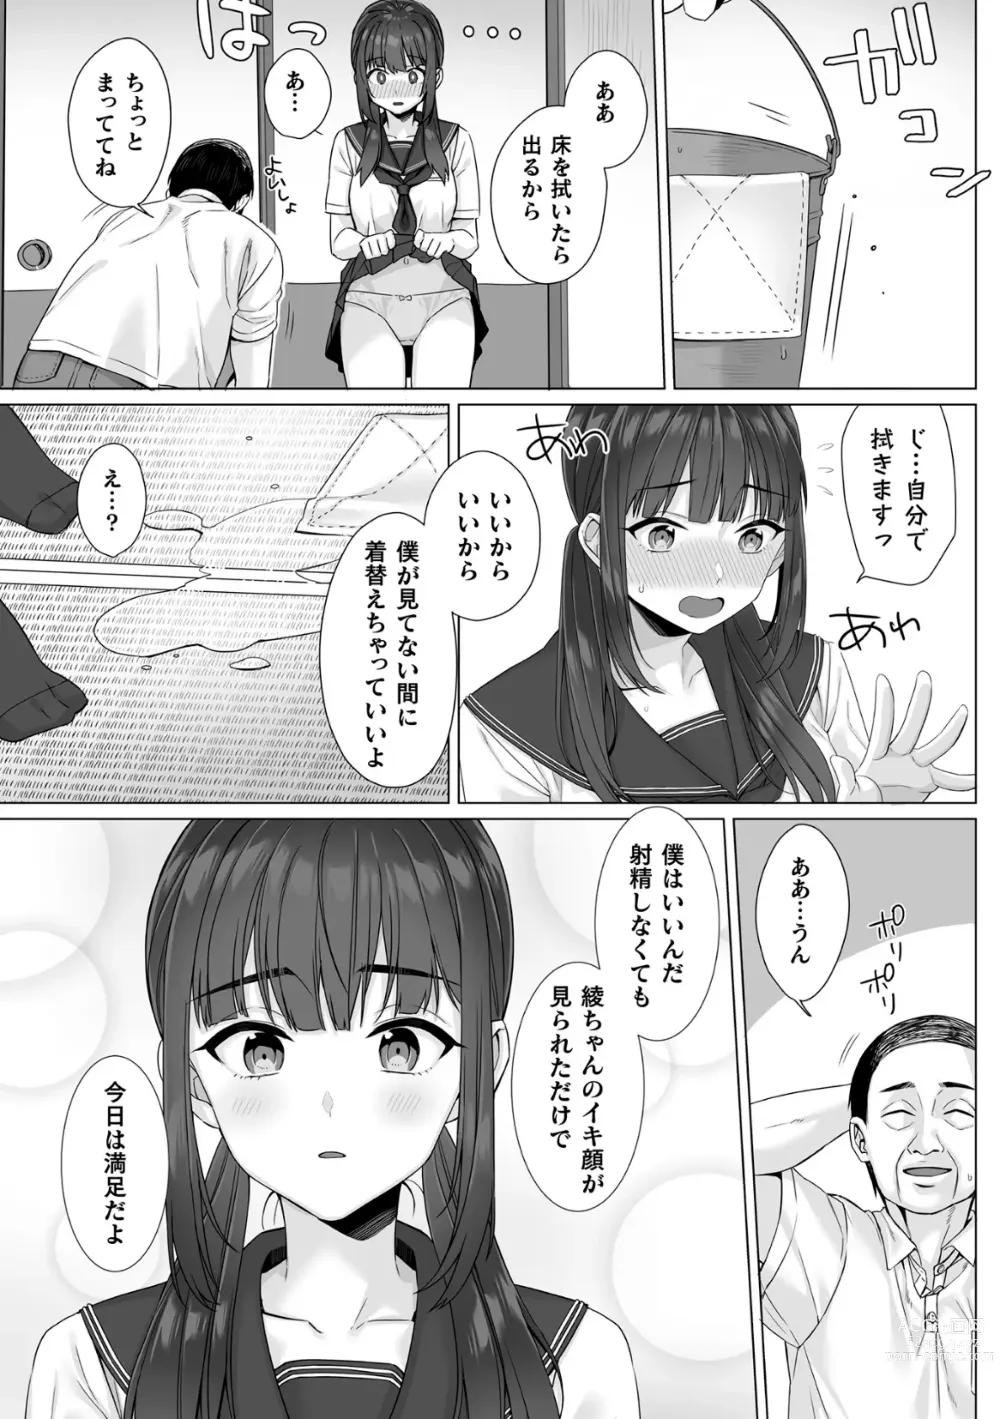 Page 16 of manga Junboku Joshikousei wa Oyaji Iro ni Somerarete Comic Ban Ch. 4